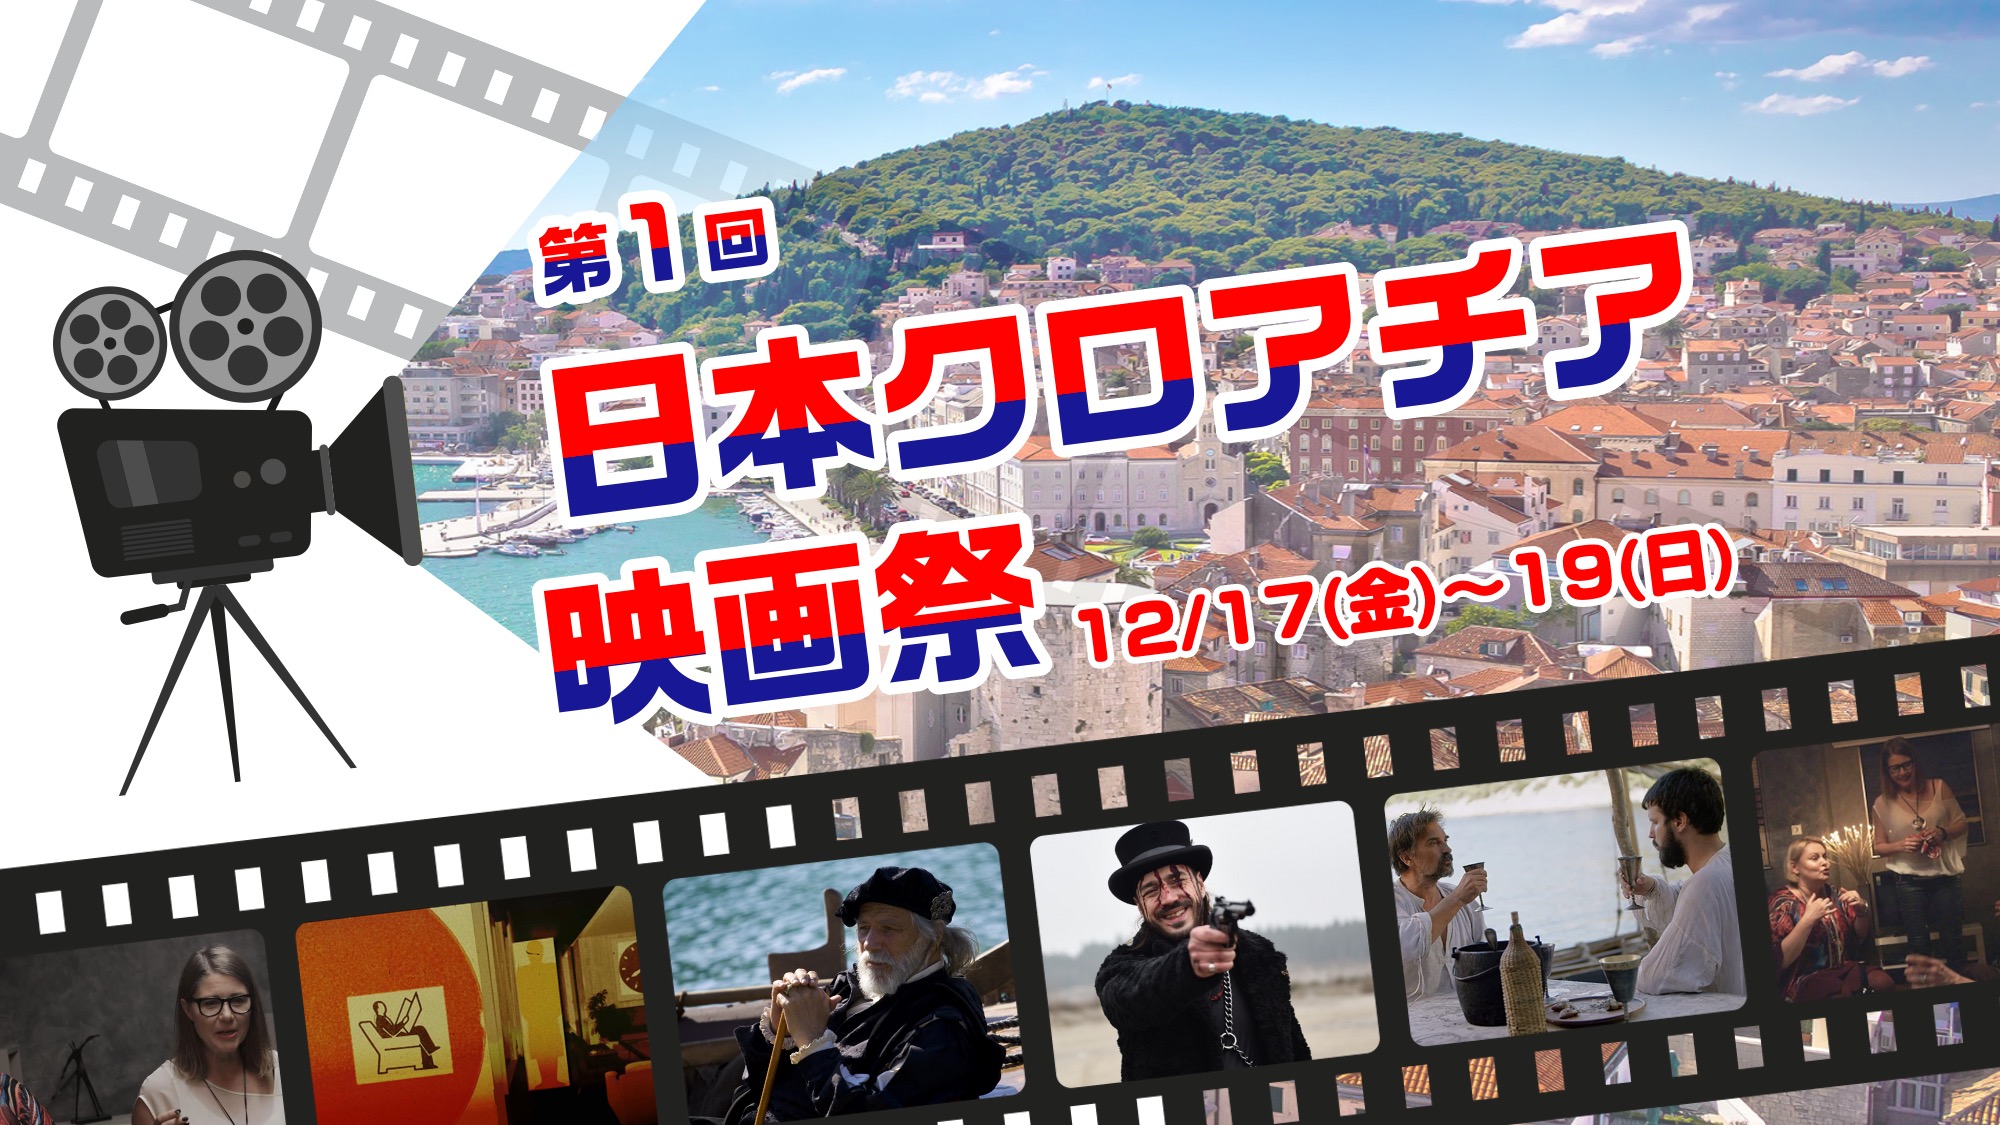 日本初 第一回 日本クロアチア映画祭 オフィシャルサポーター募集 一般社団法人日本クロアチア協会のプレスリリース